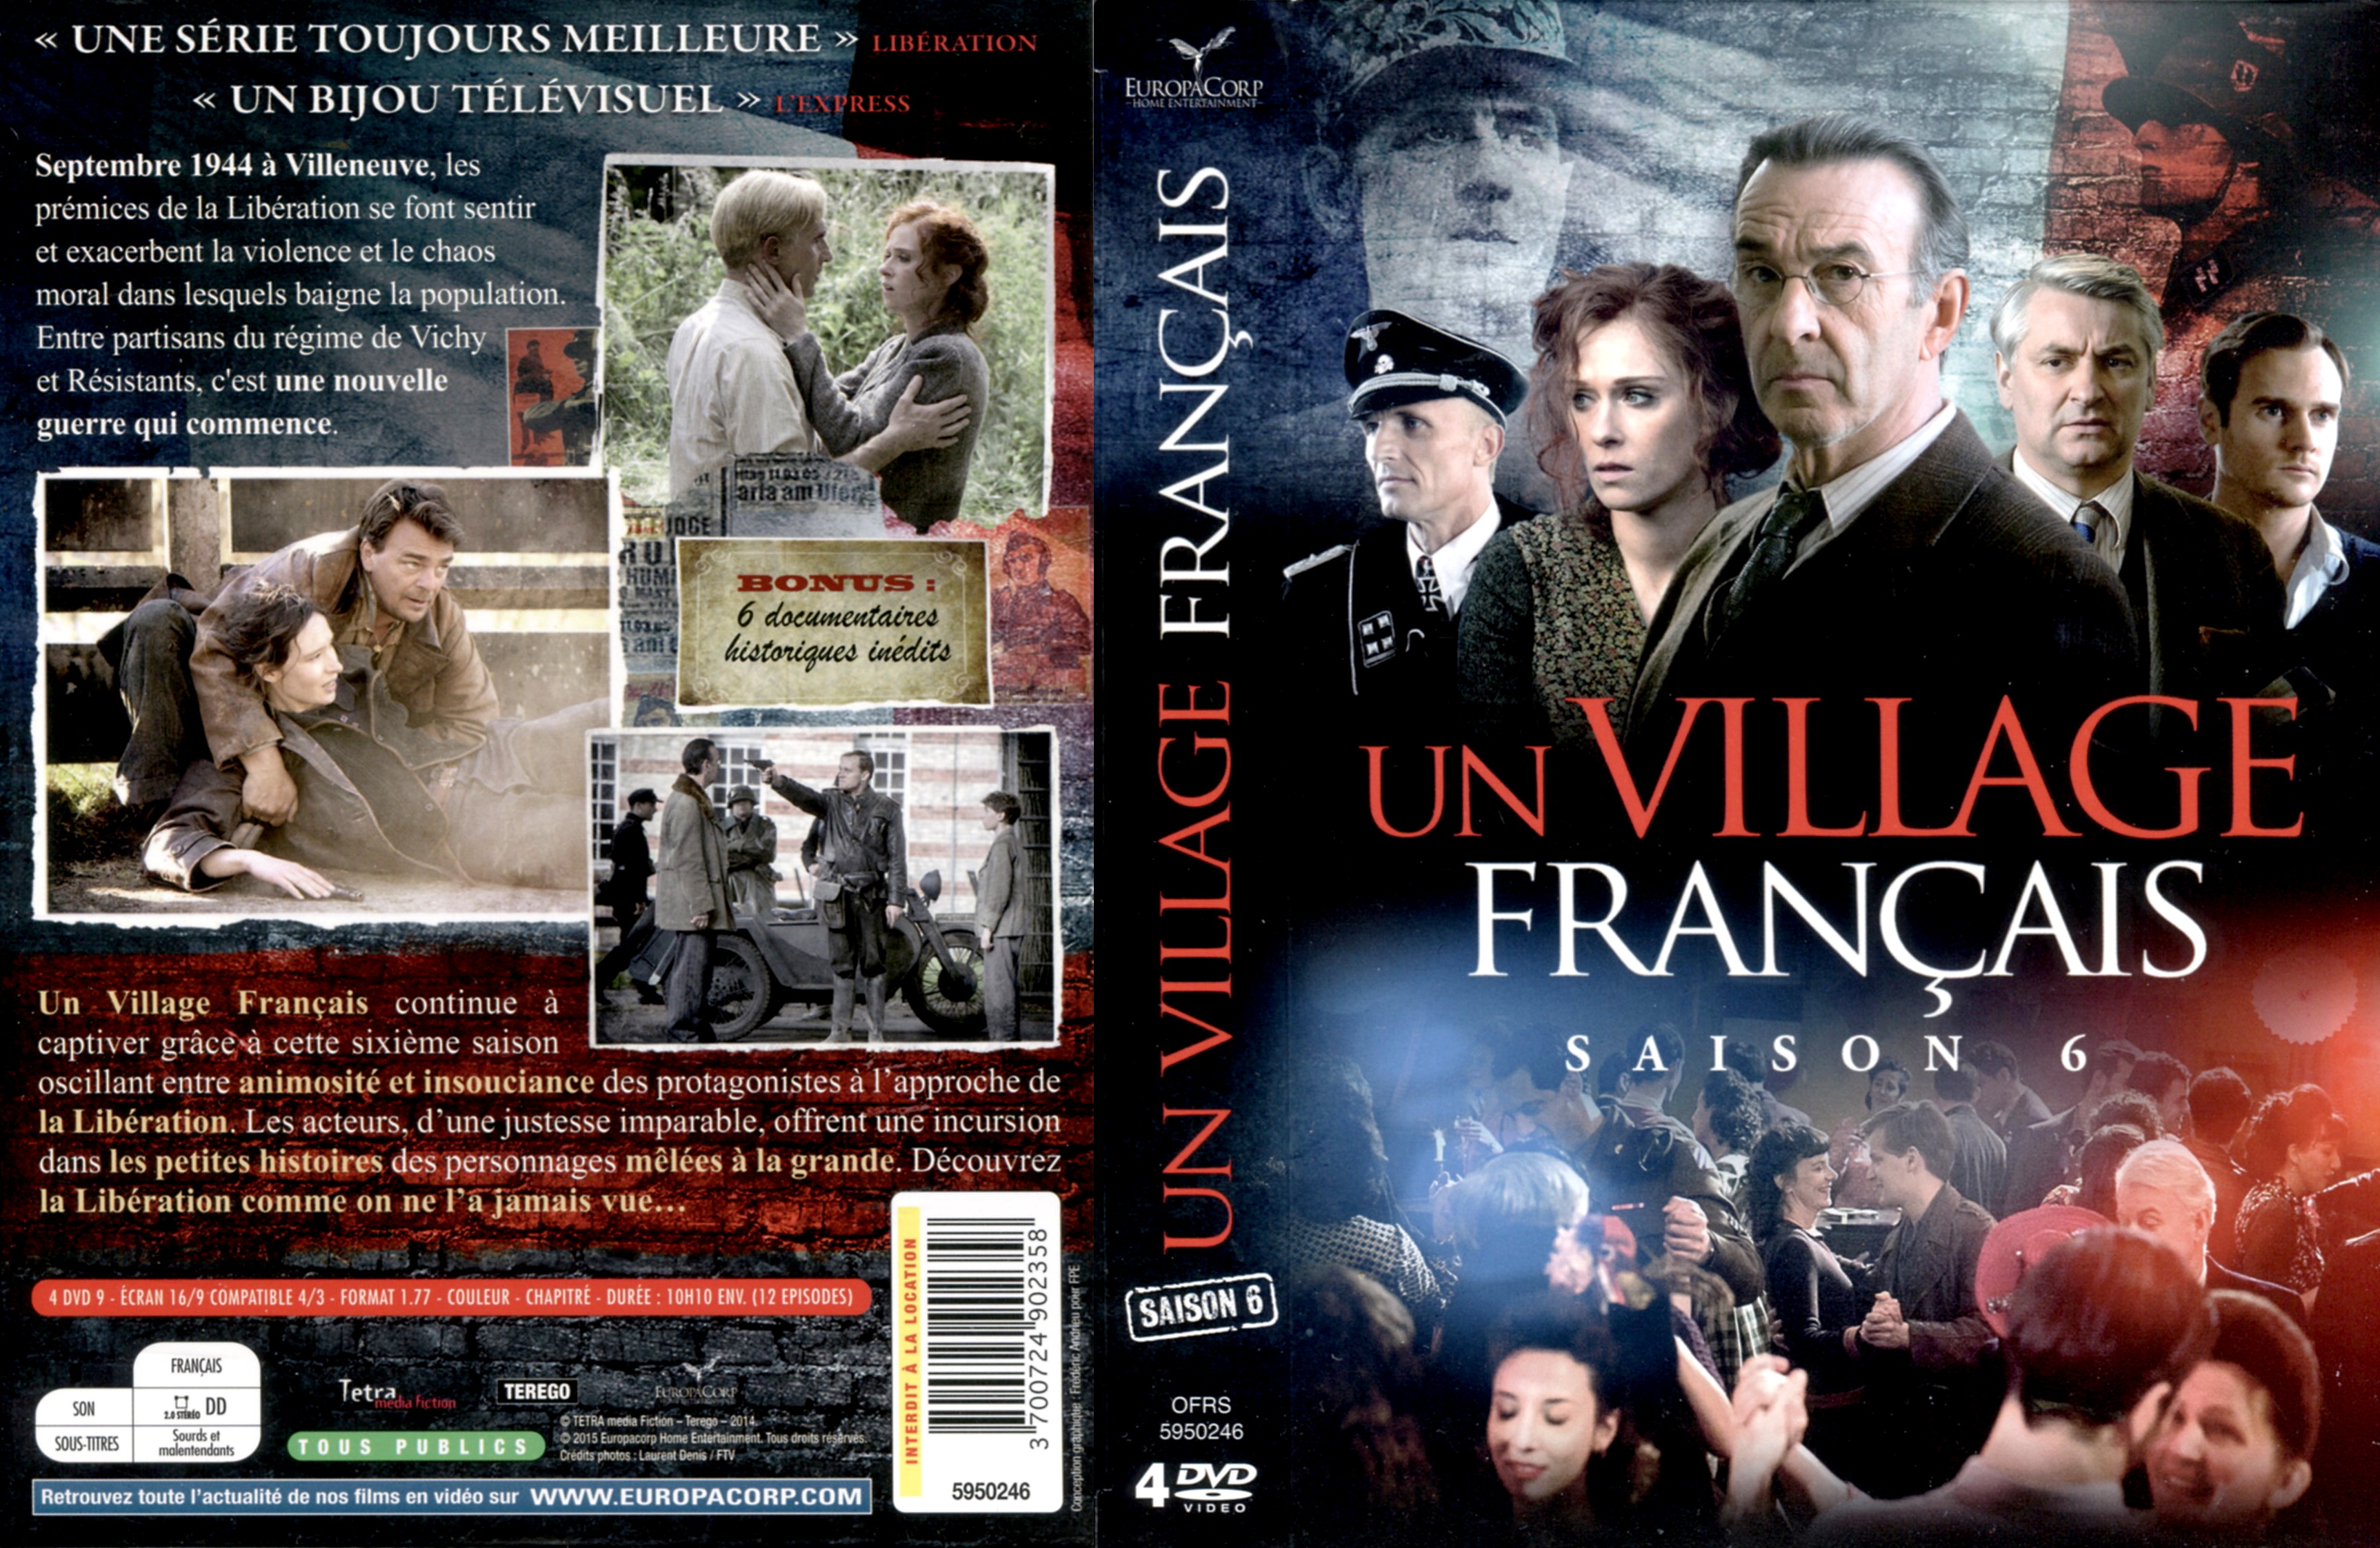 Jaquette DVD Un village francais Saison 6